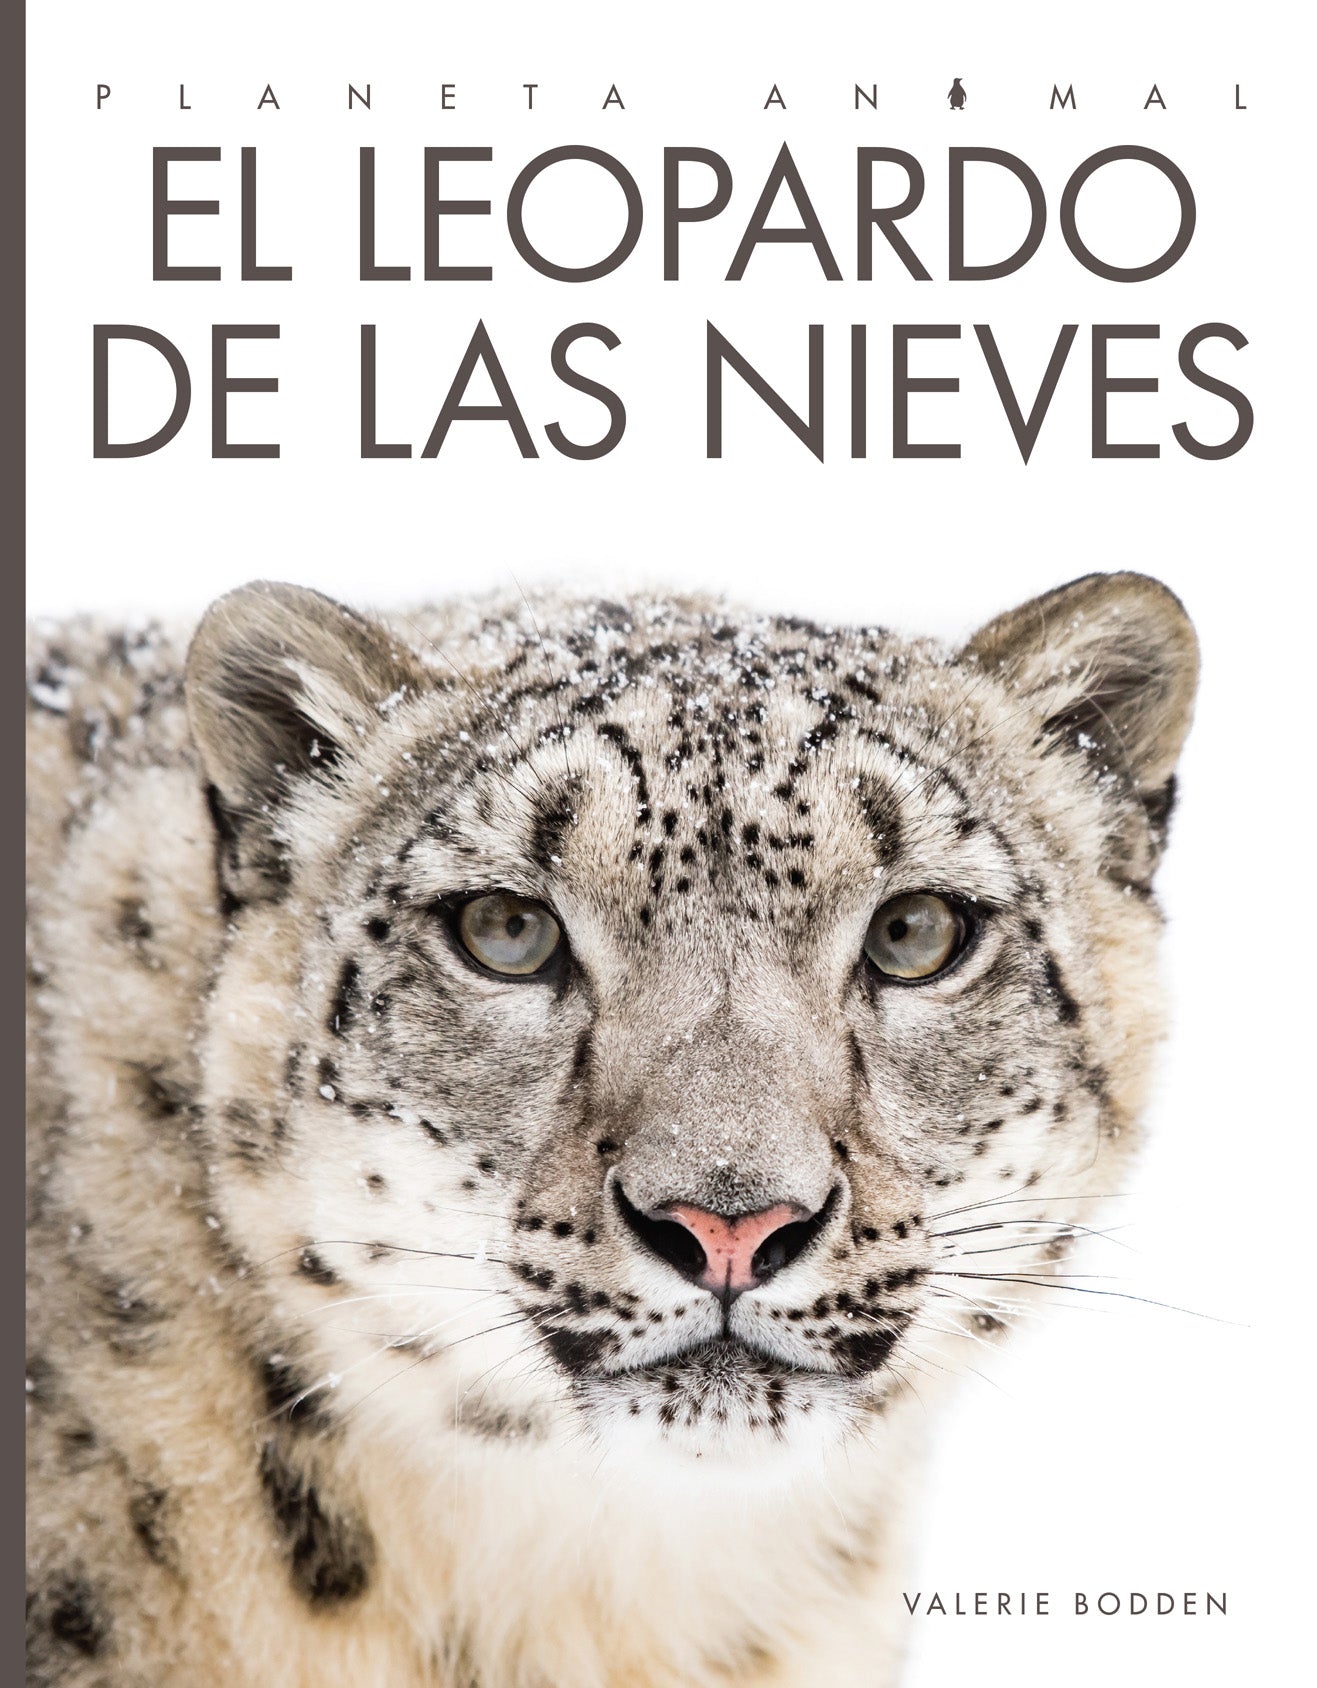 Planeta animal - Classic Edition: El leopardo de las nieves by The Creative Company Shop